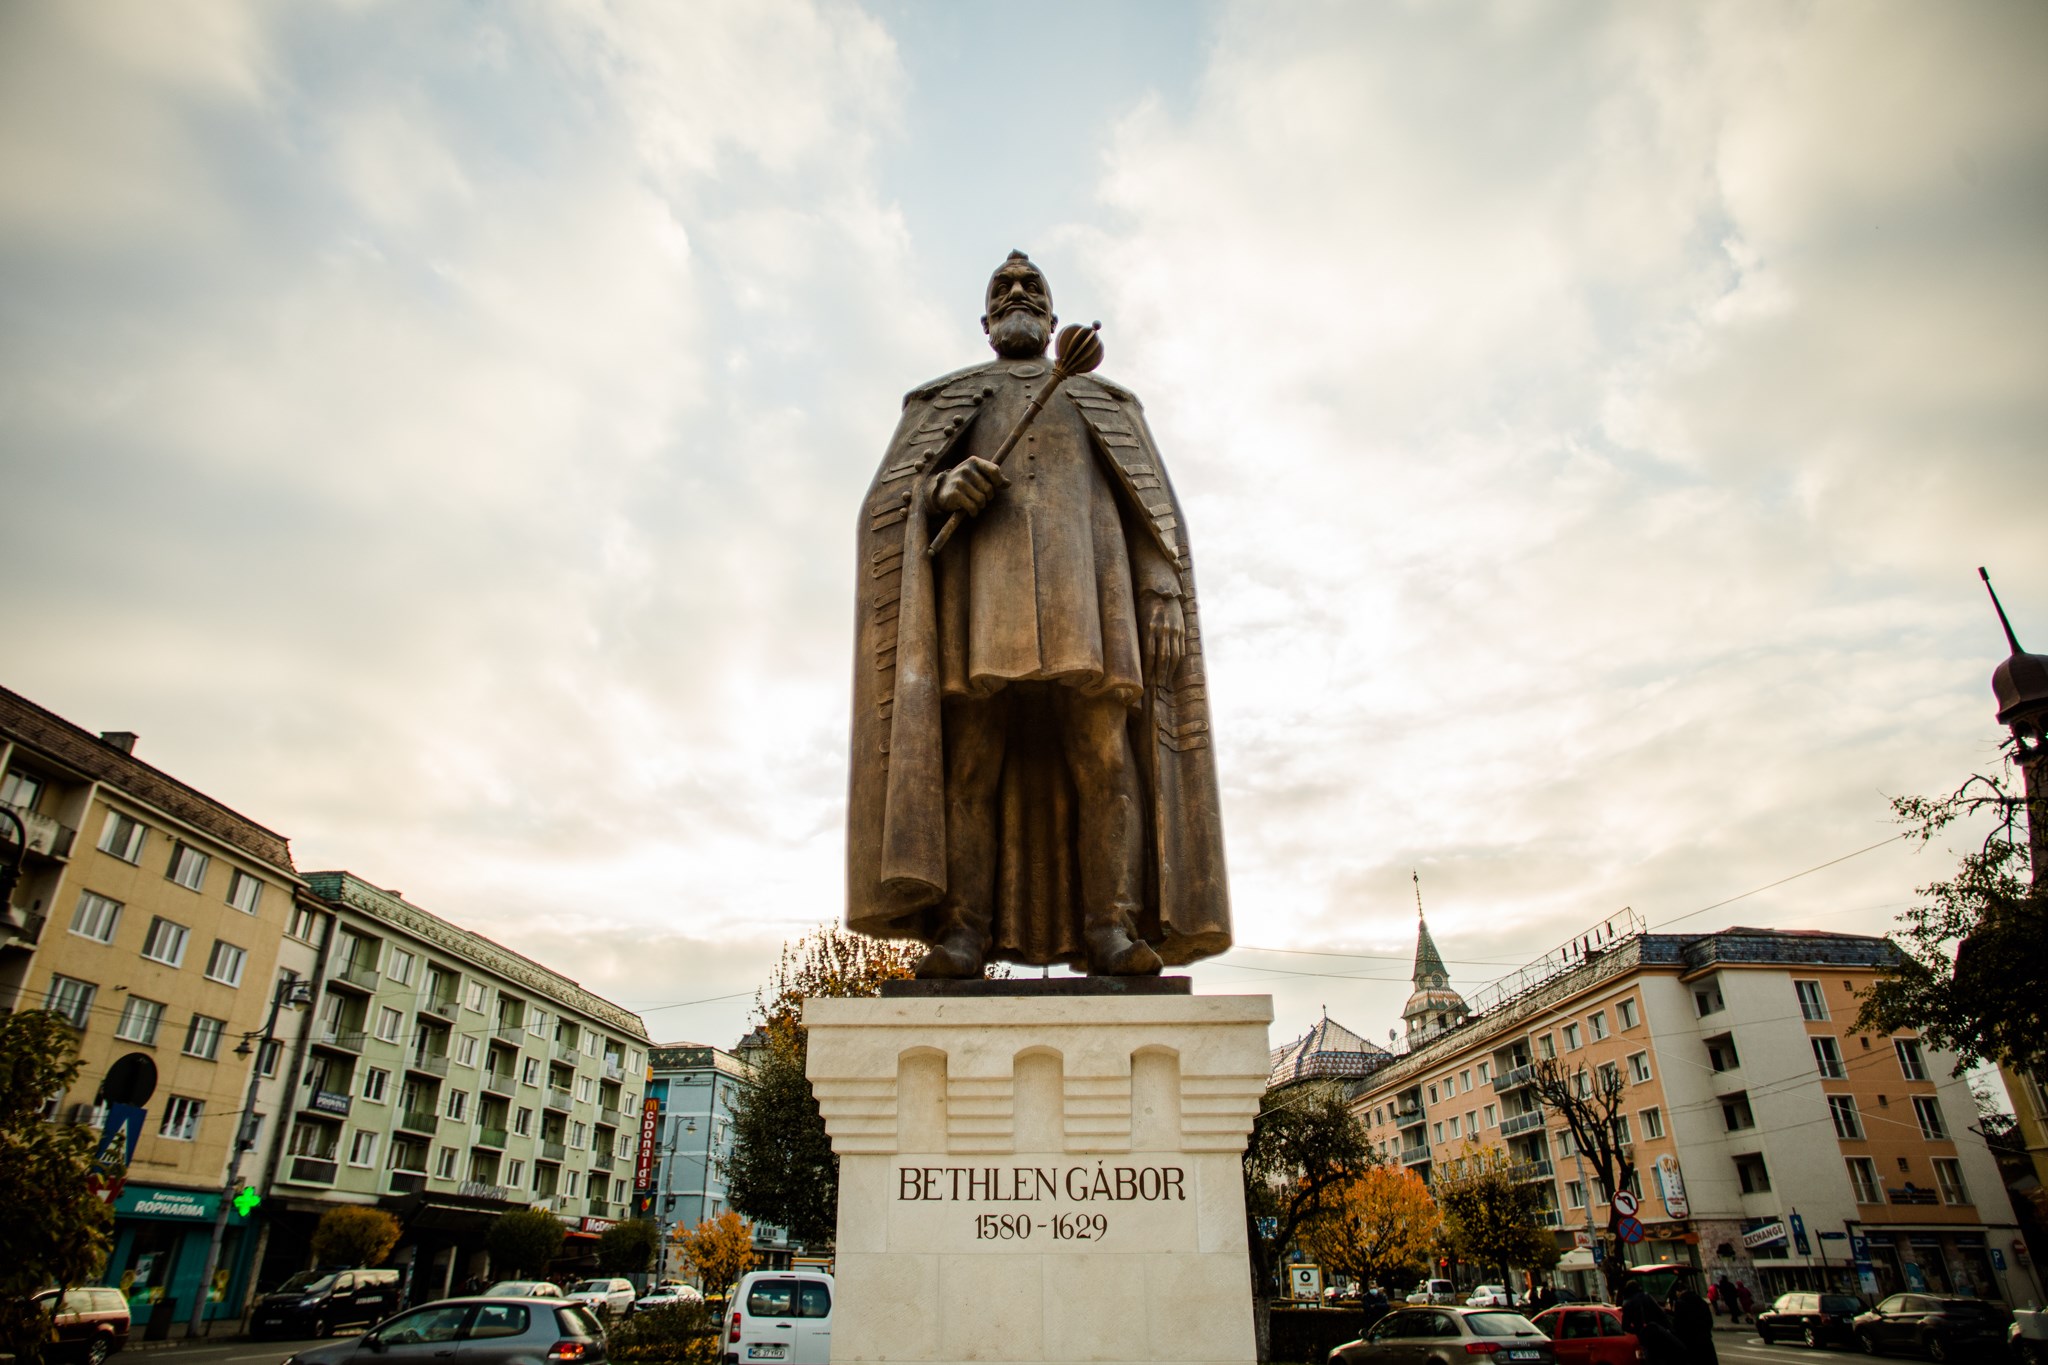 Transilvanijski kip princa Bethlena svečano otvoren u Marosvásárhely Targu Muresu